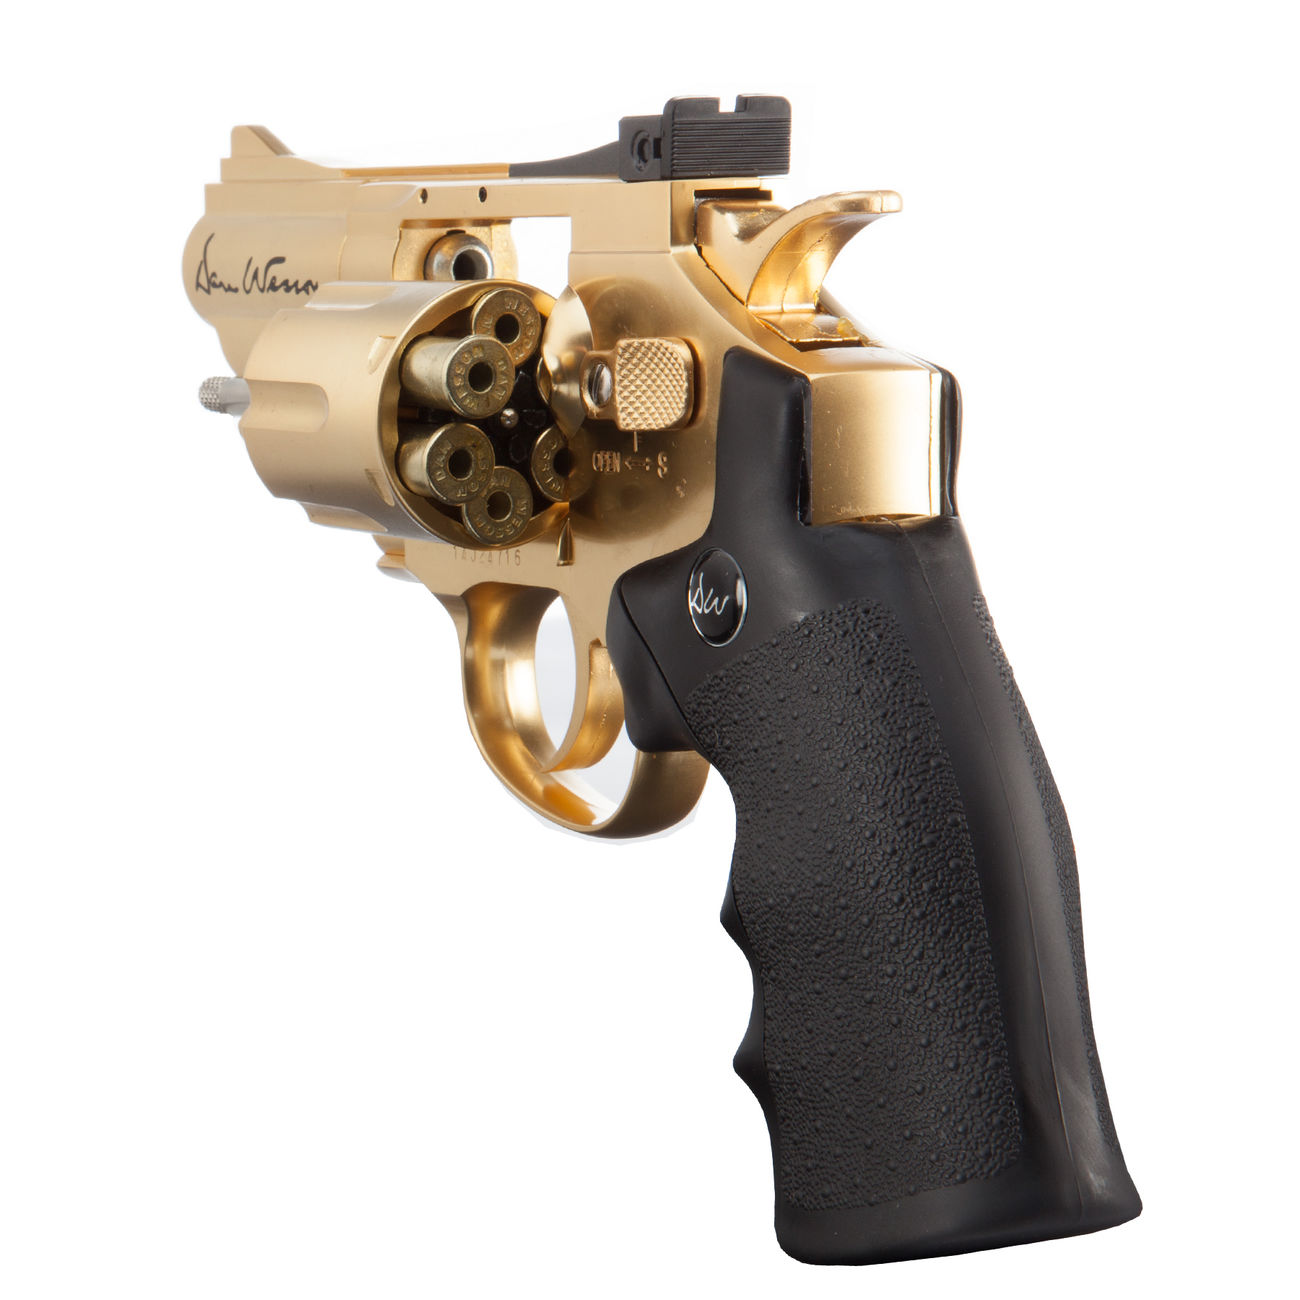 ASG Dan Wesson 2,5 Zoll 4,5mm BB CO2 Revolver gold Bild 1